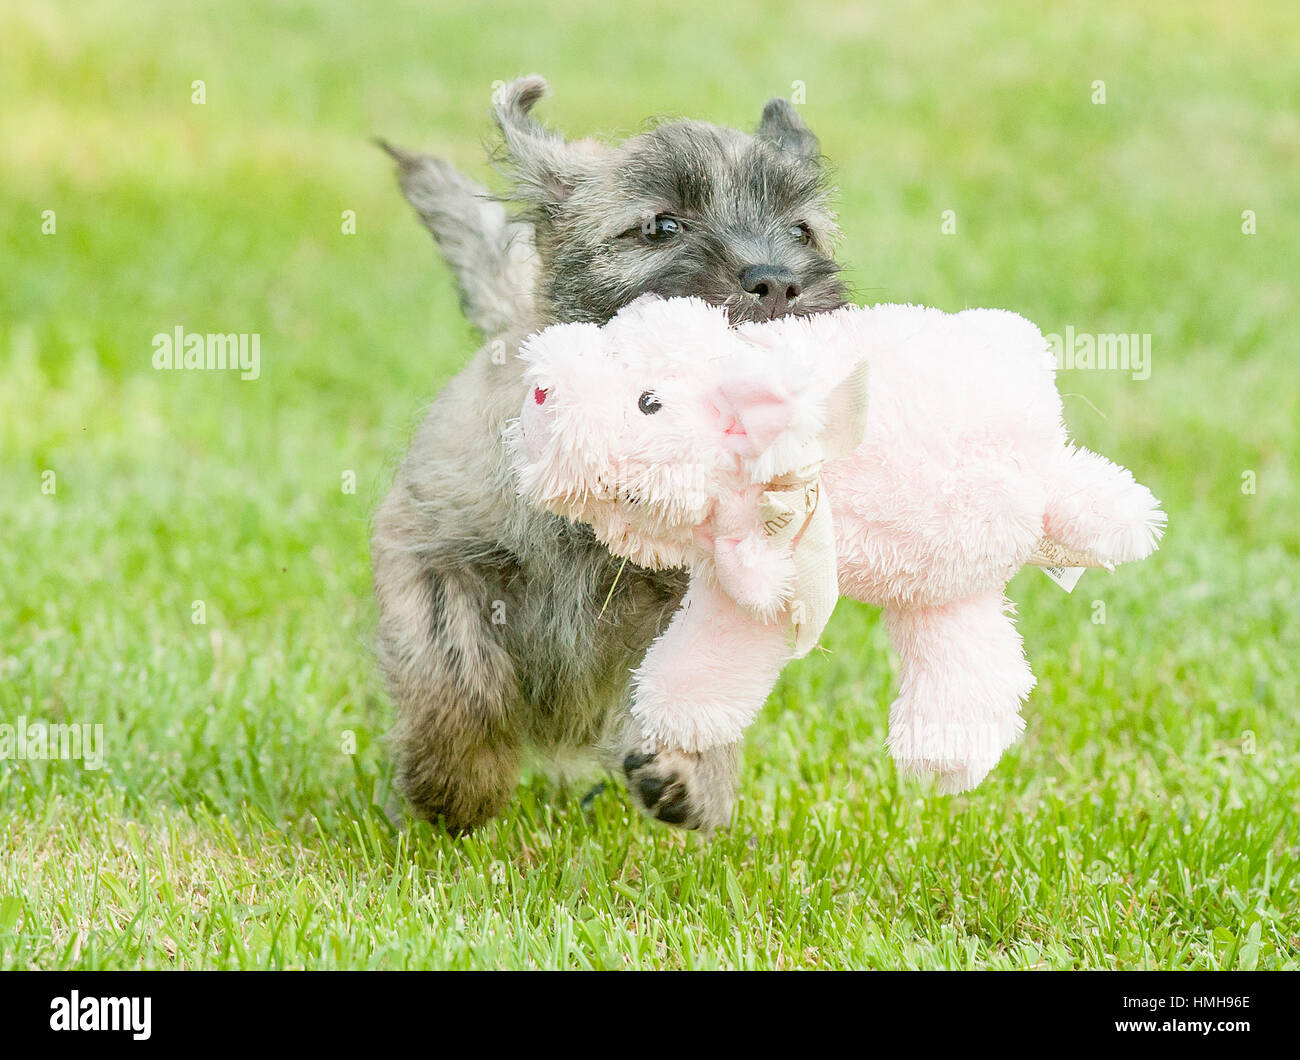 cairn terrier stuffed dog